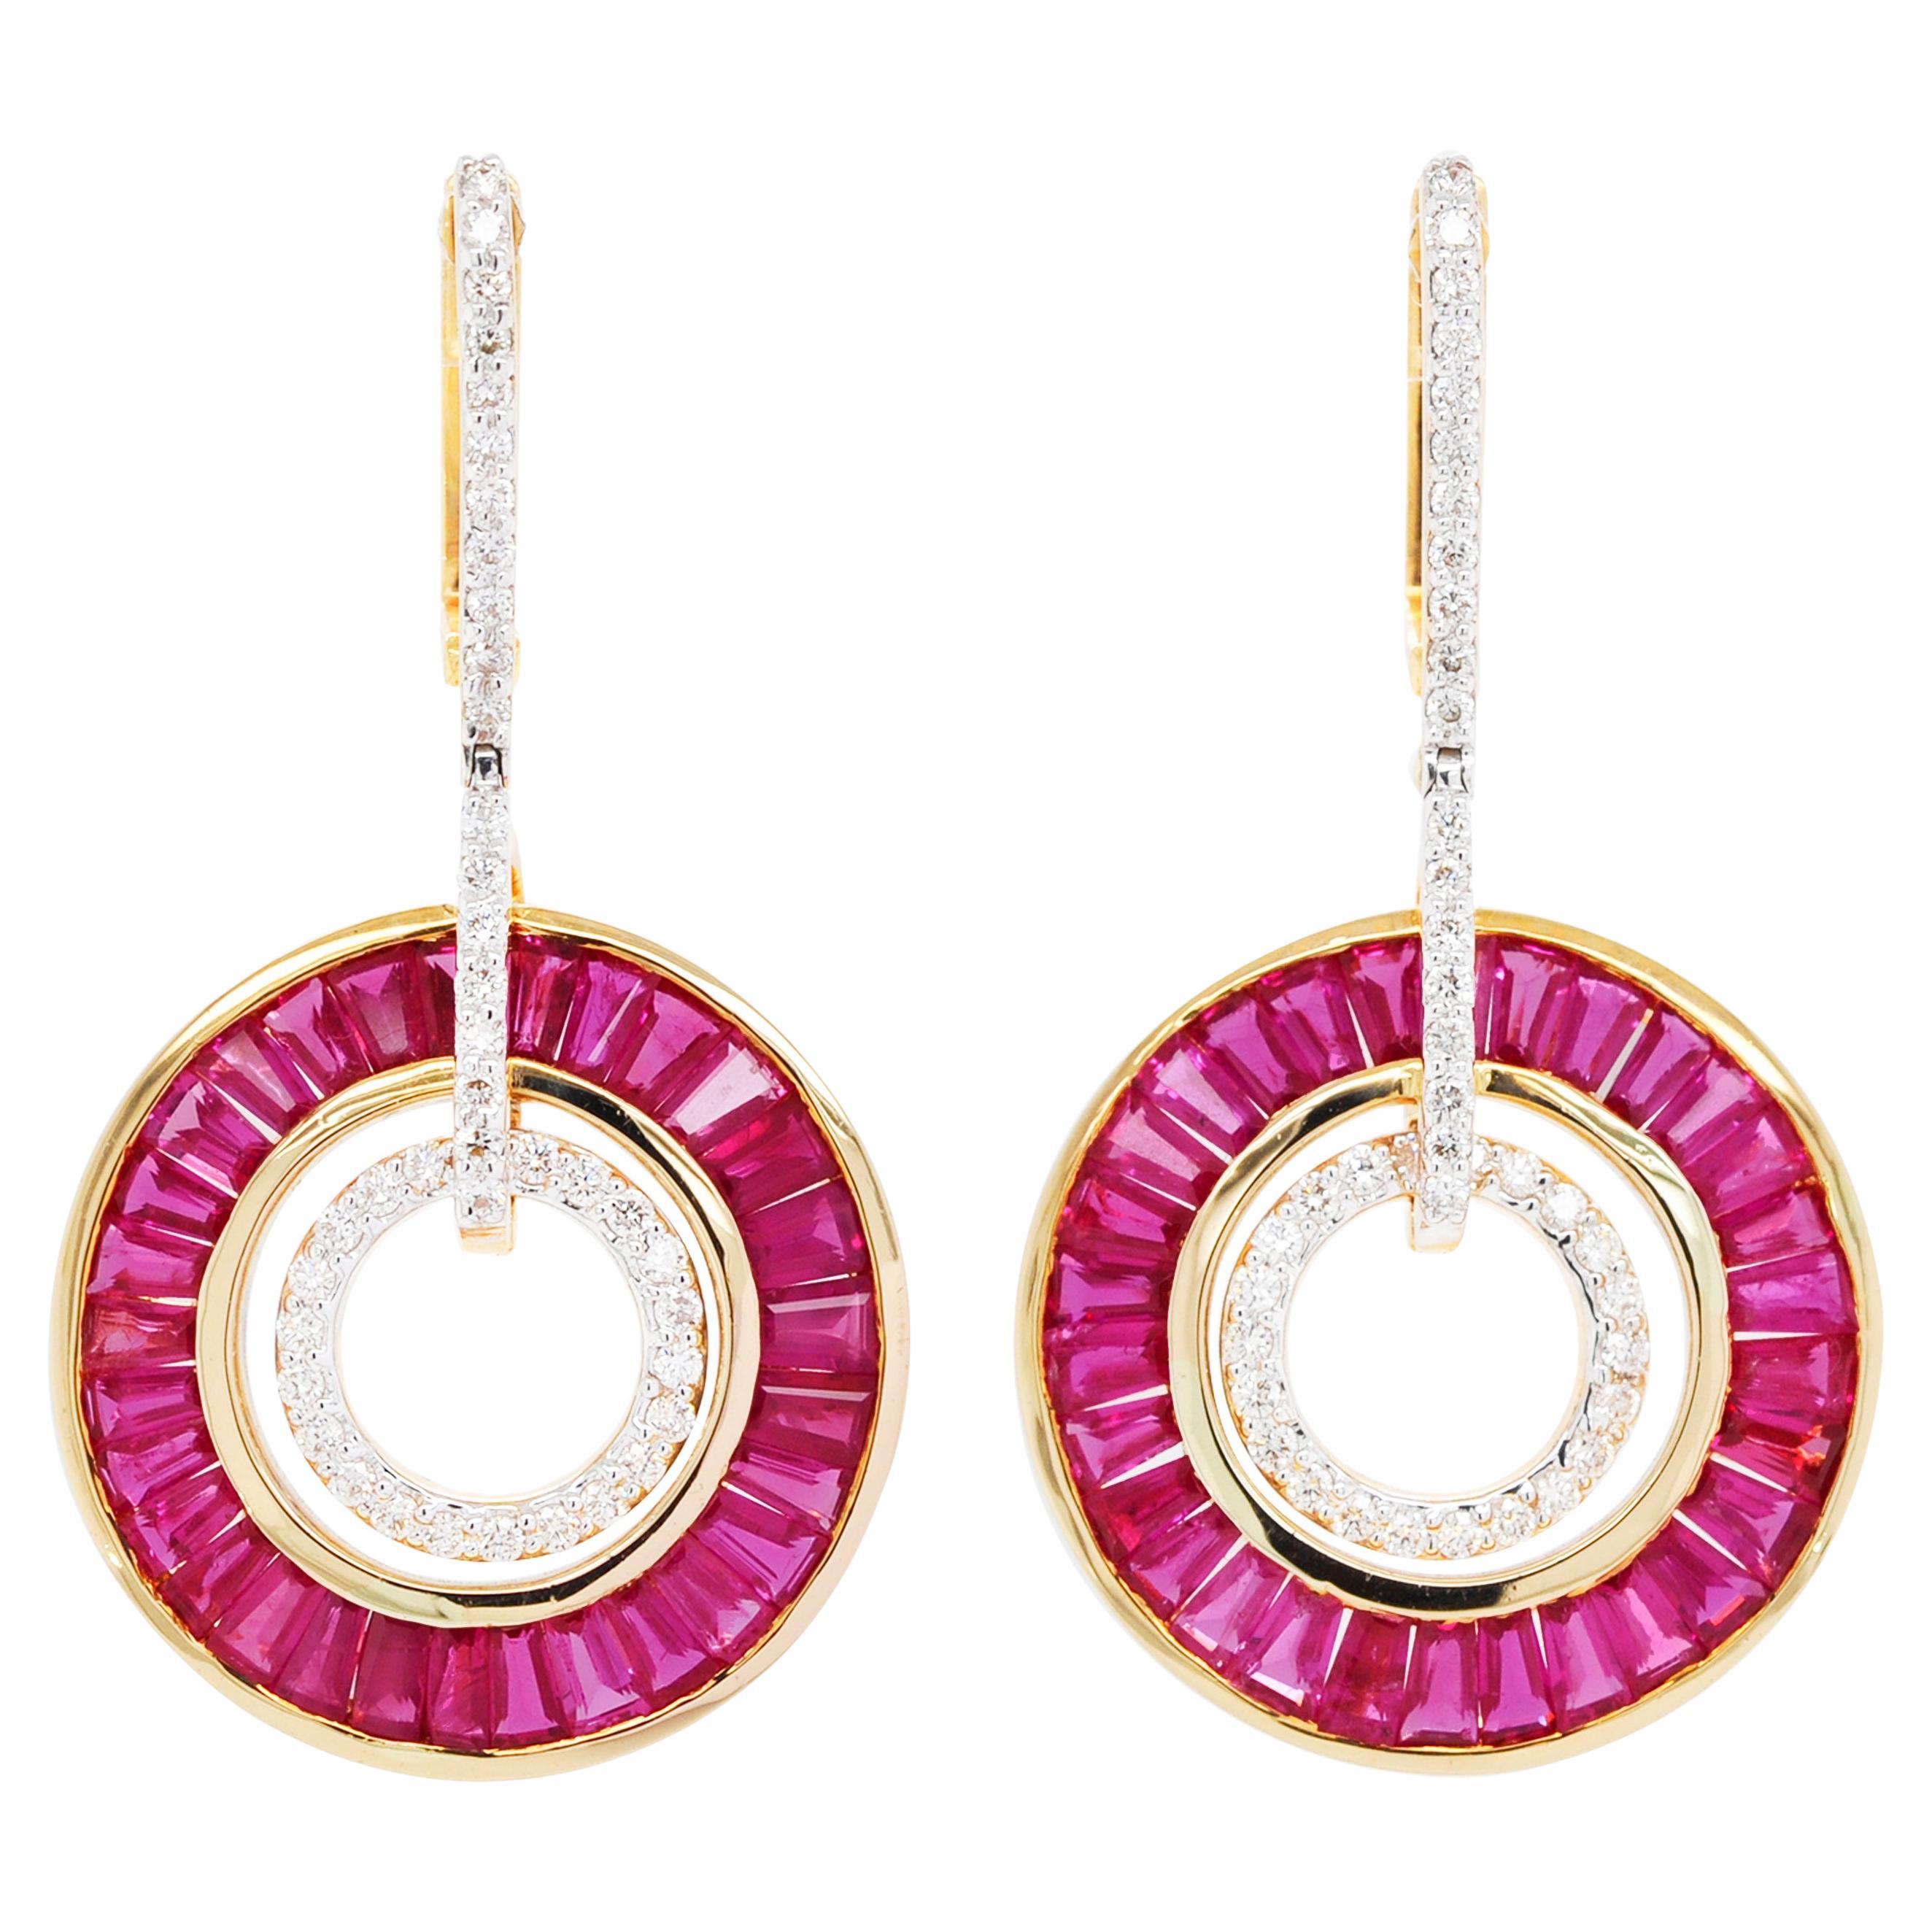 Pendants d'oreilles circulaires Art déco en or 18 carats avec baguettes effilées, rubis et diamants